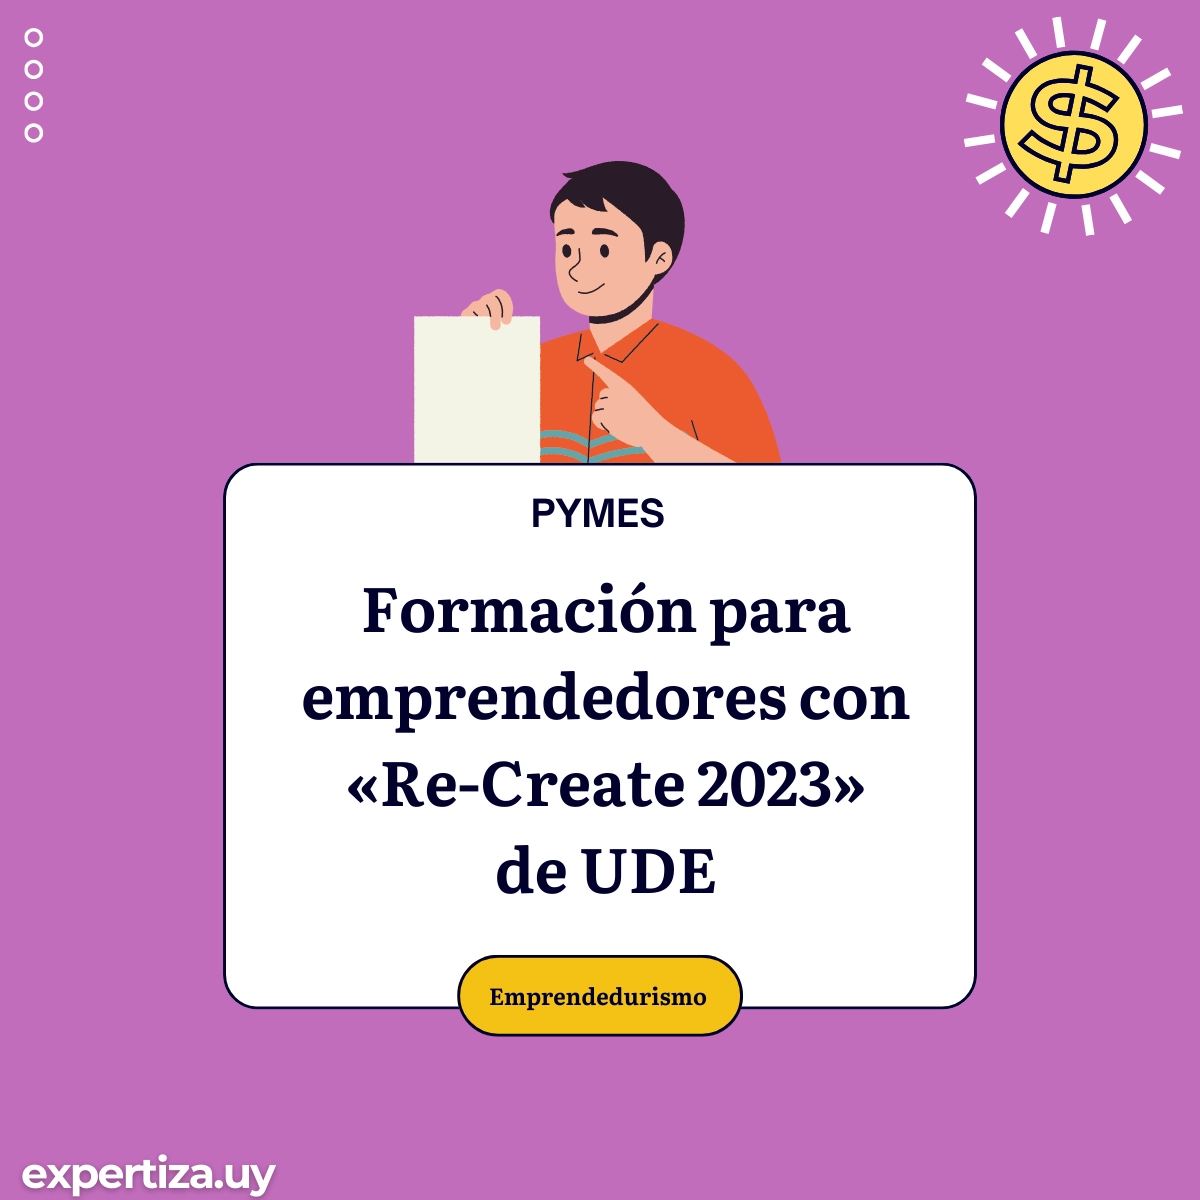 Formación para emprendedores con "Re-Create 2023" de UDE.